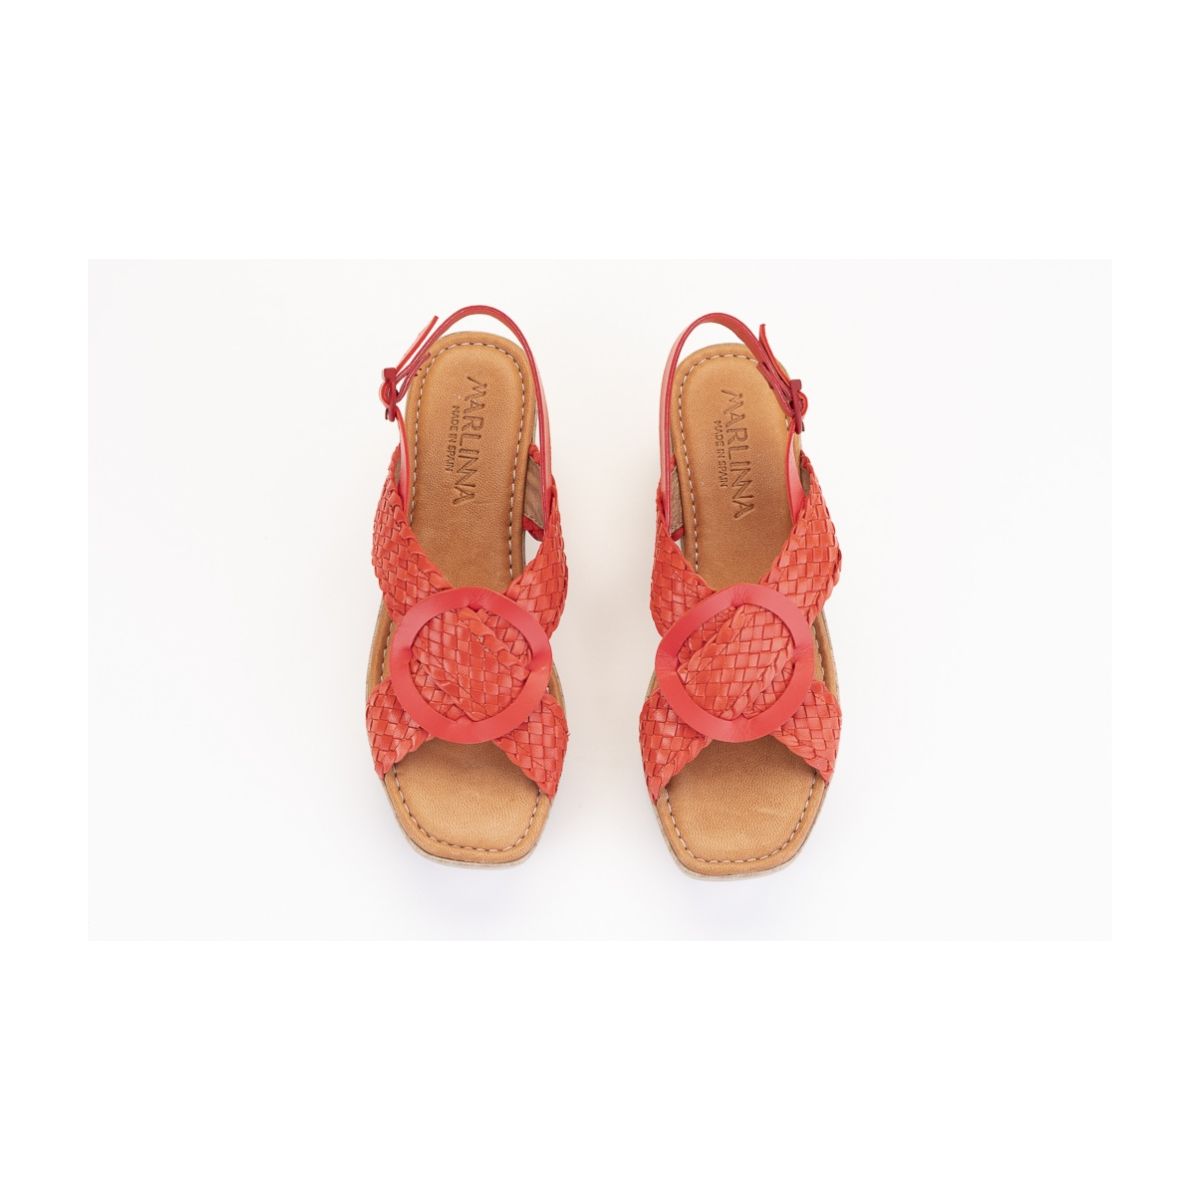 Sandales confortables compensées à talon effet bois - Rouge - Lince